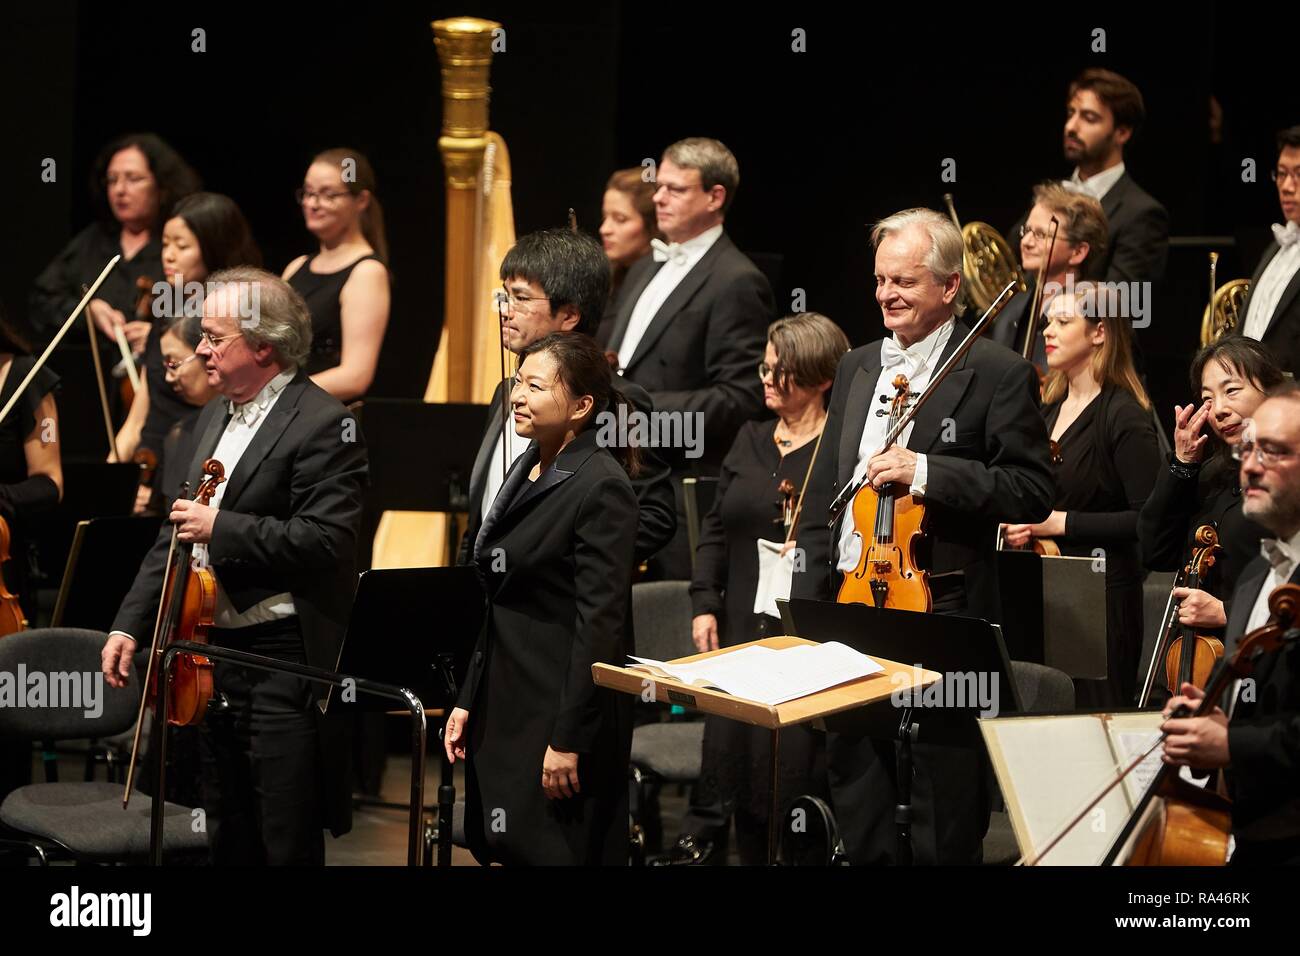 Il sud coreano Shiyeon conduttore cantata con la Staatsorchester Rheinische Philharmonie, concerto del Musik-Institut-Koblenz Foto Stock